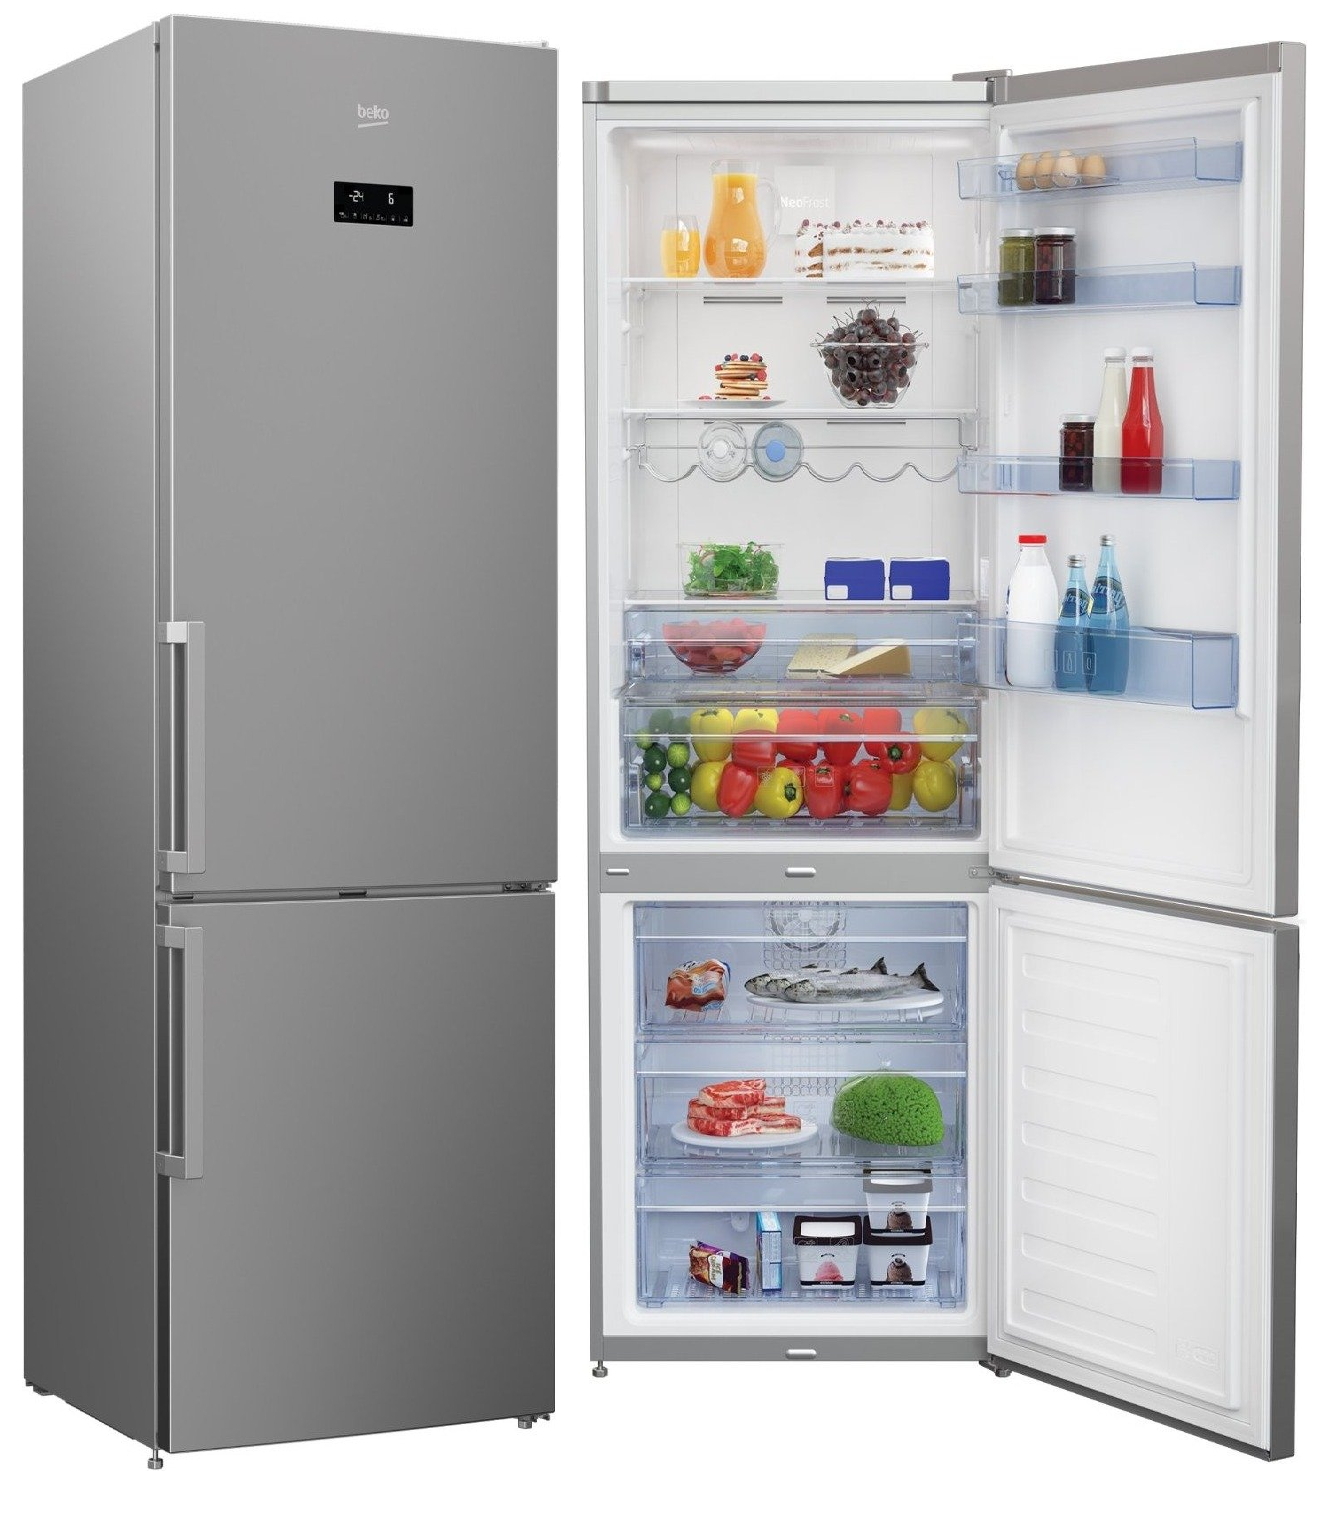 Фирмы производителей холодильников. Холодильник БЕКО в3rcnk402hx. Холодильник-морозильник, марки БЕКО модель cnkl7321ecow. Холодильник Beko CNKL 7321 ec0s. Холодильник БЕКО rcnk400e30zw.